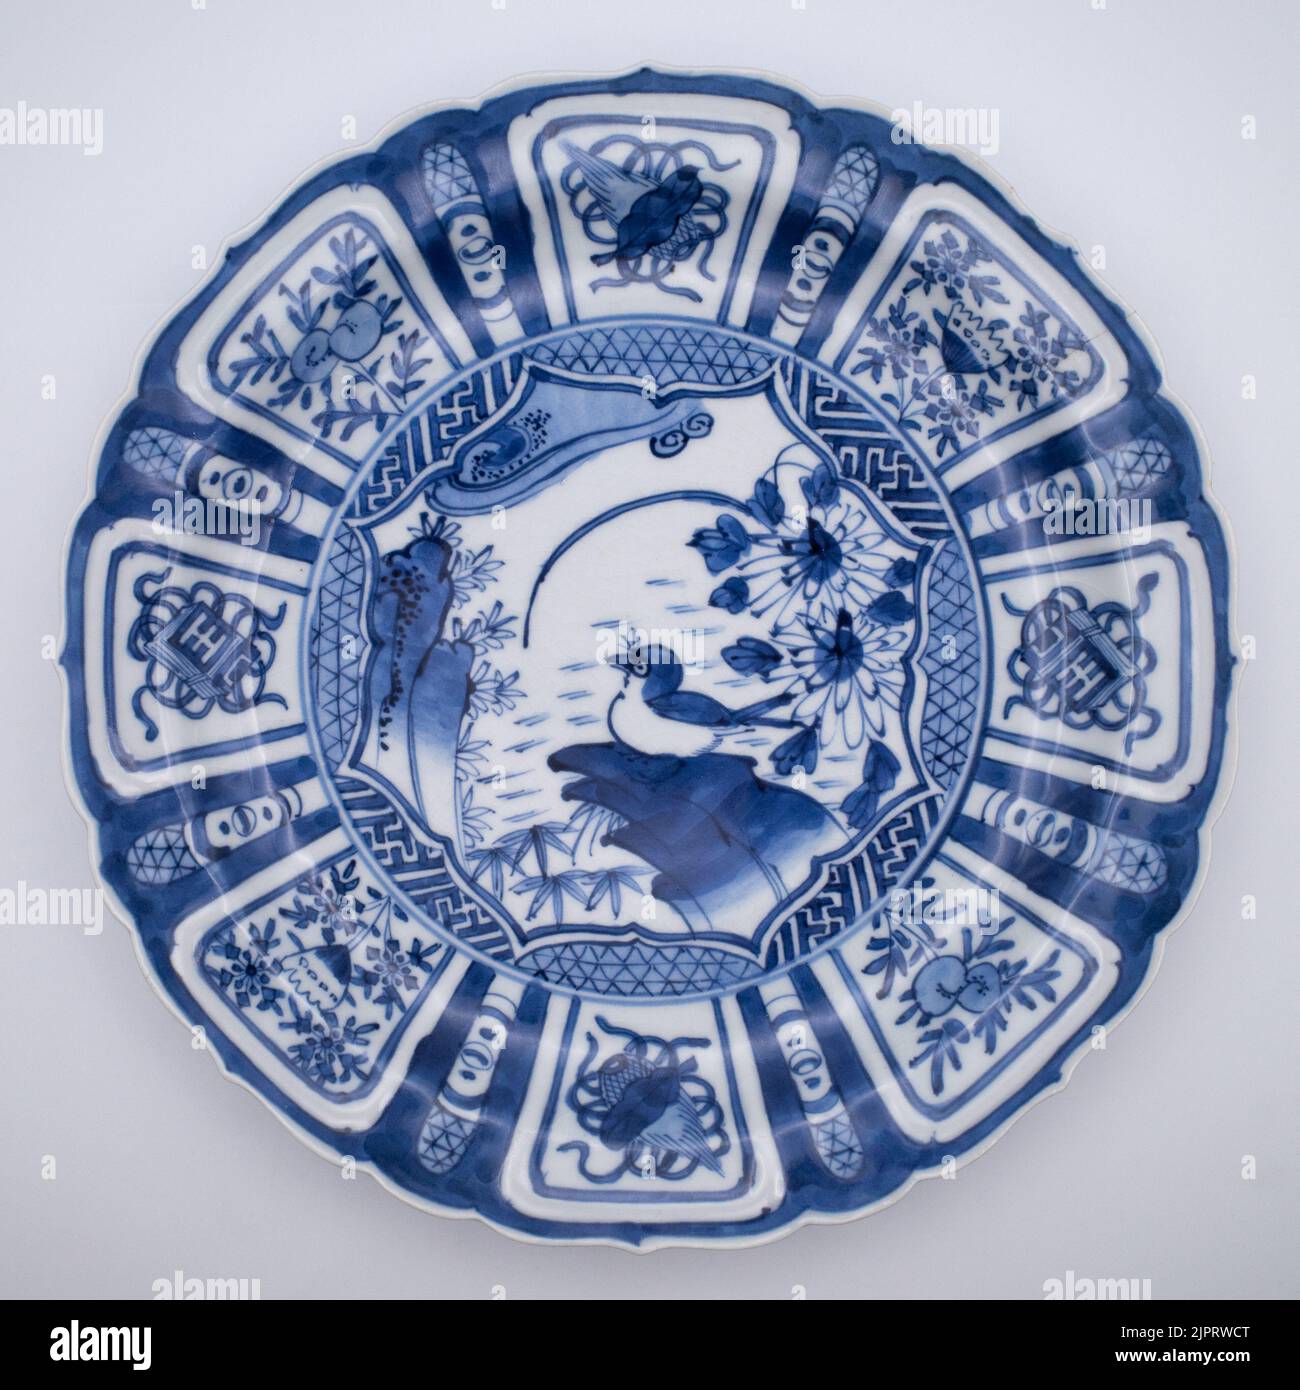 Plat, plat peu profond - Bleu et blanc, fuyo-de - porcelaine - oiseau - Antique Japanese Kraak style plat en porcelaine avec bordure festonnée - Japon - période Edo Banque D'Images